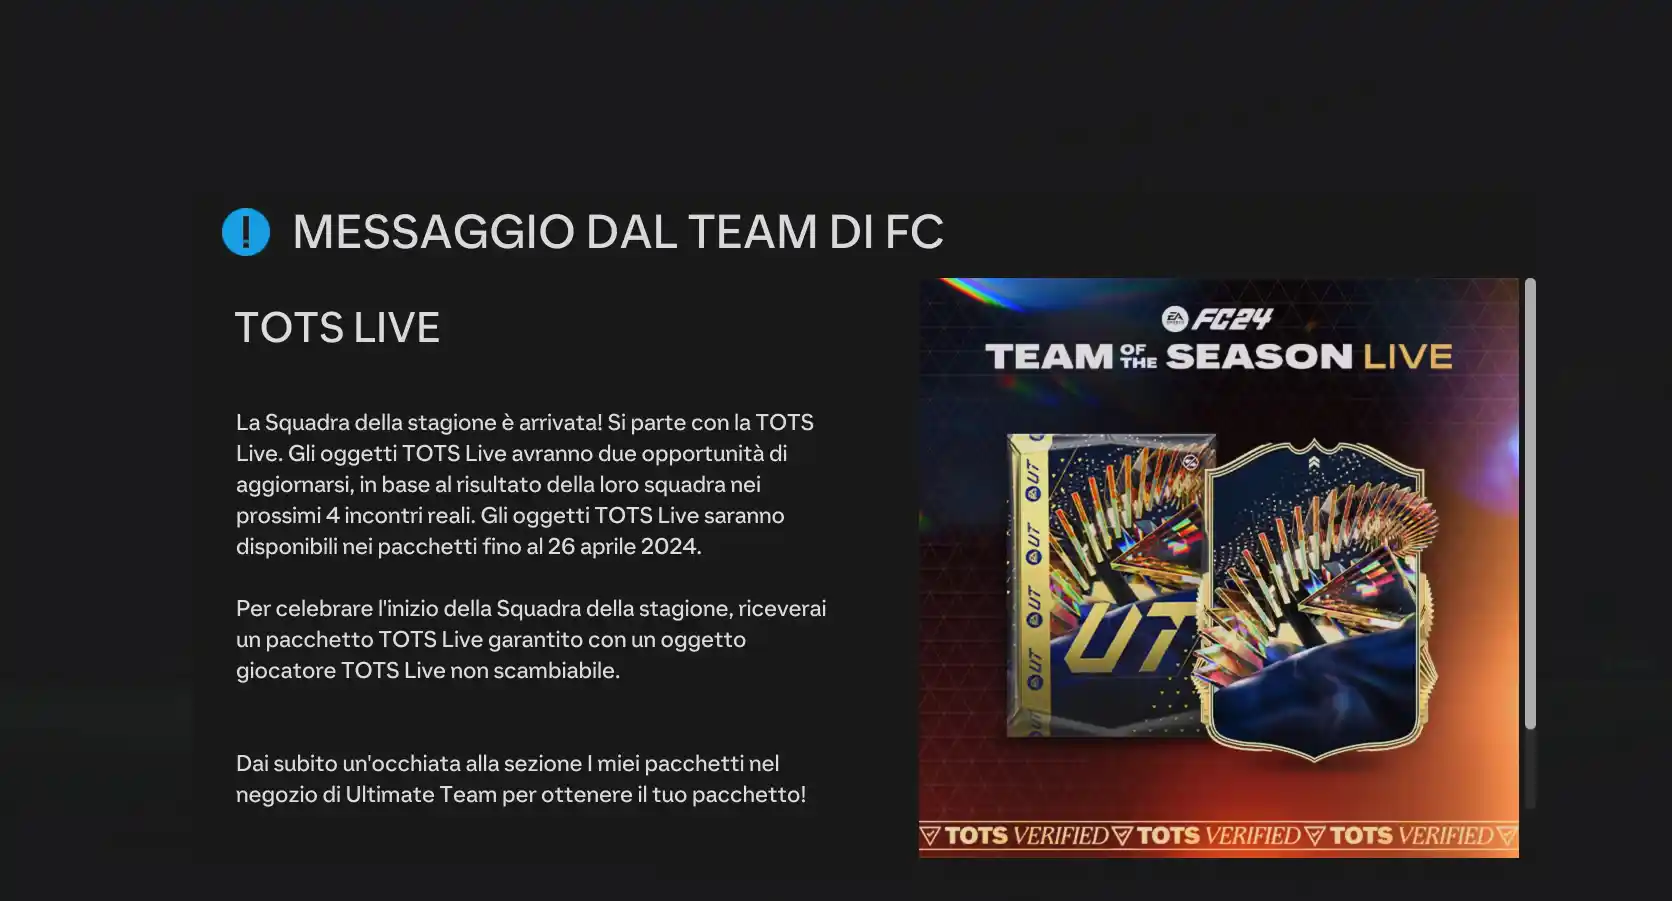 EA FC 24 Ultimate Team TOTS Live rosa completa Team of the Season, come funzionano gli upgrade